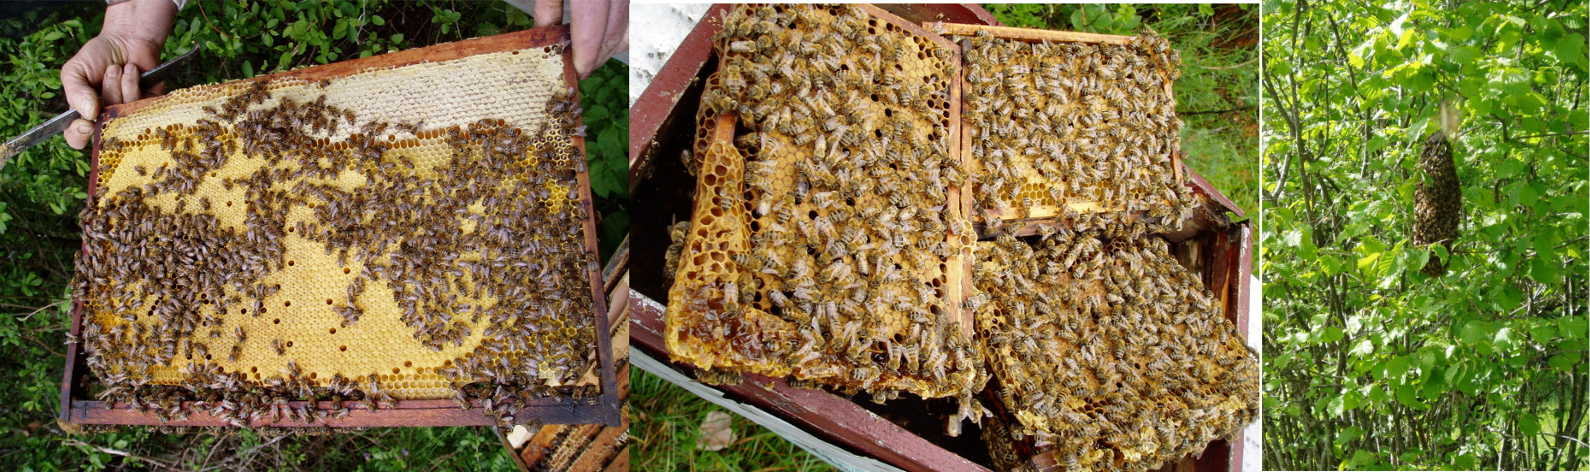 les abeilles jurabeille